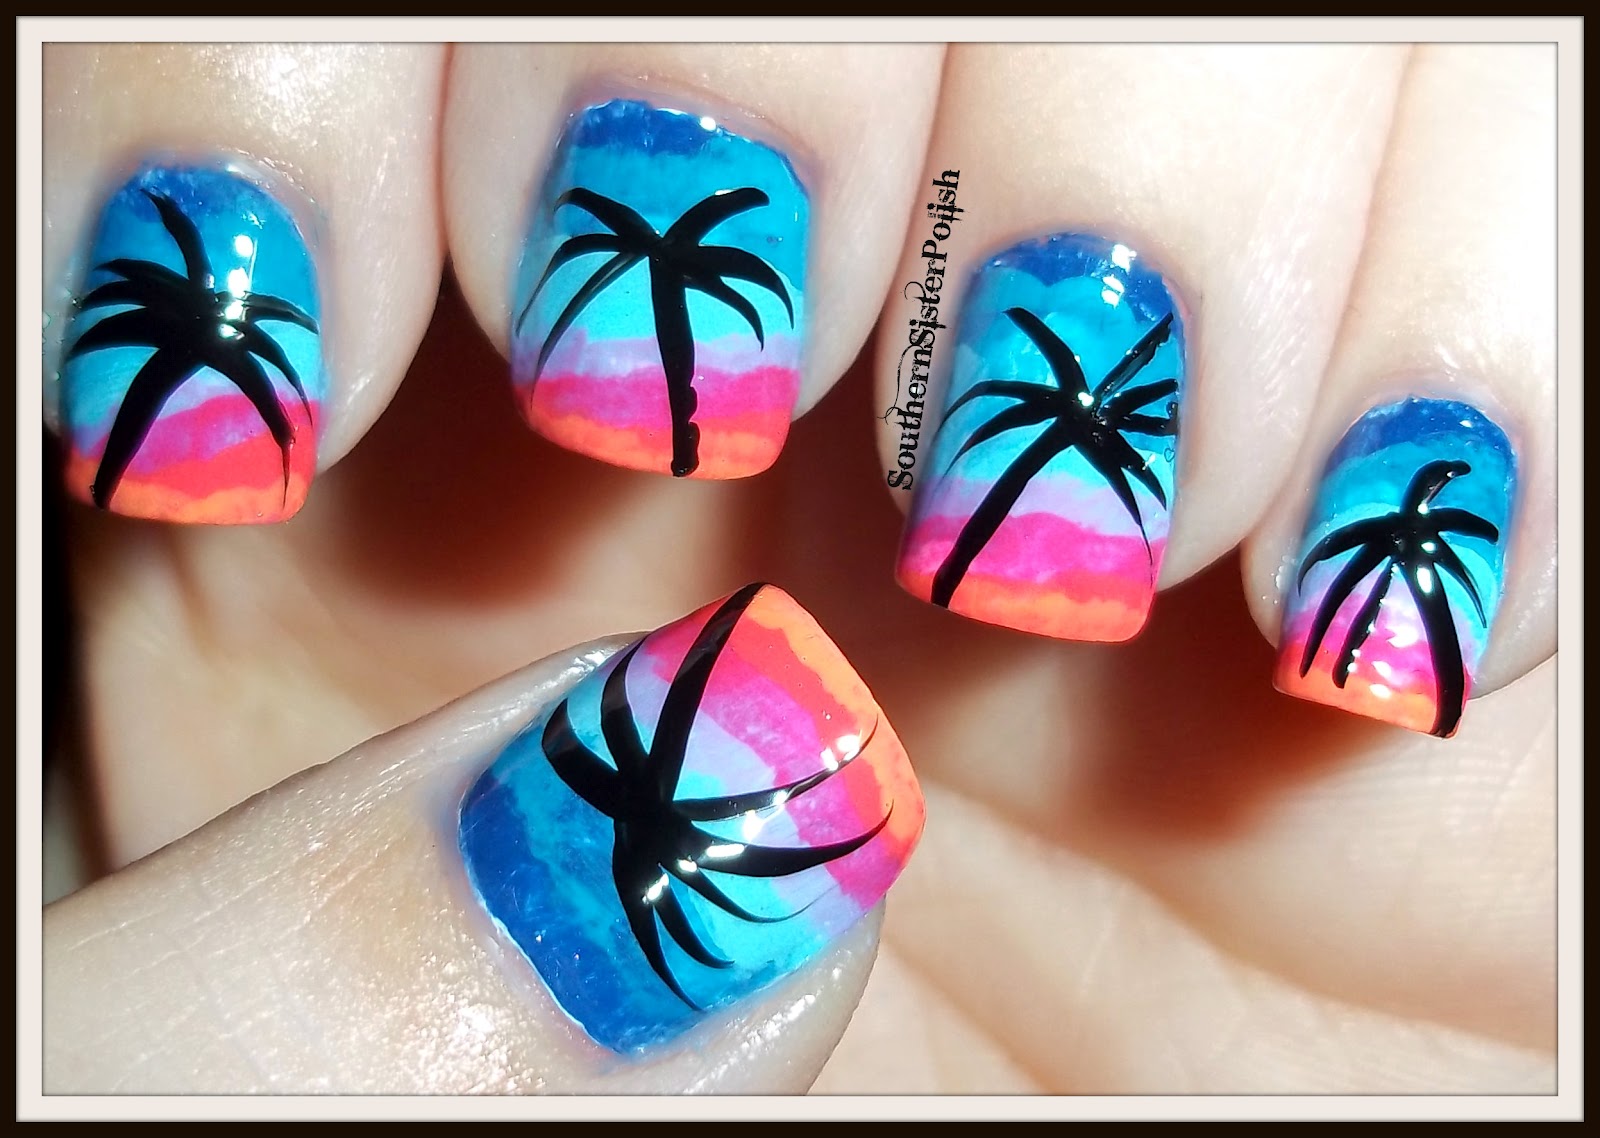 9. Sunset Beach Gel Nails - wide 10